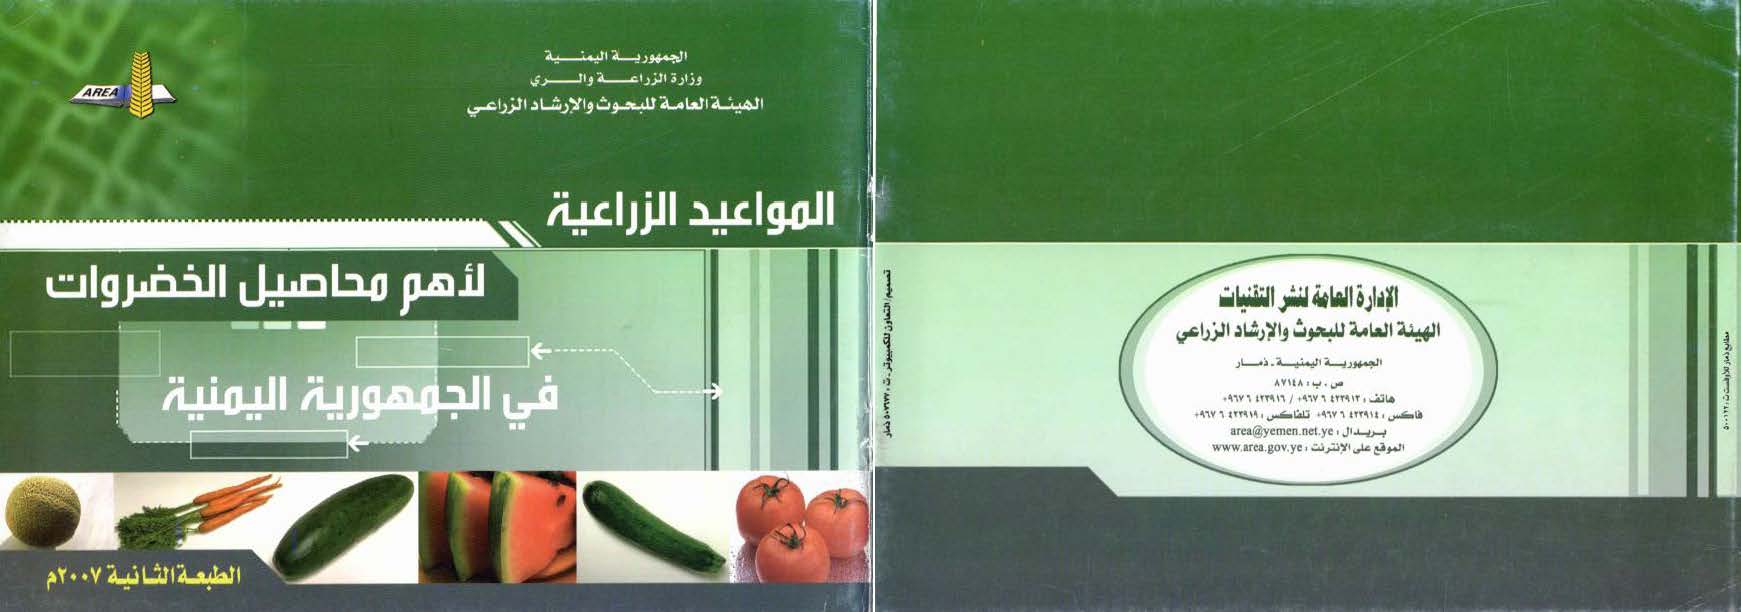 المواعيد الزراعية لاهم محاصيل الخضروات في الجمهورية اليمنية 2007م